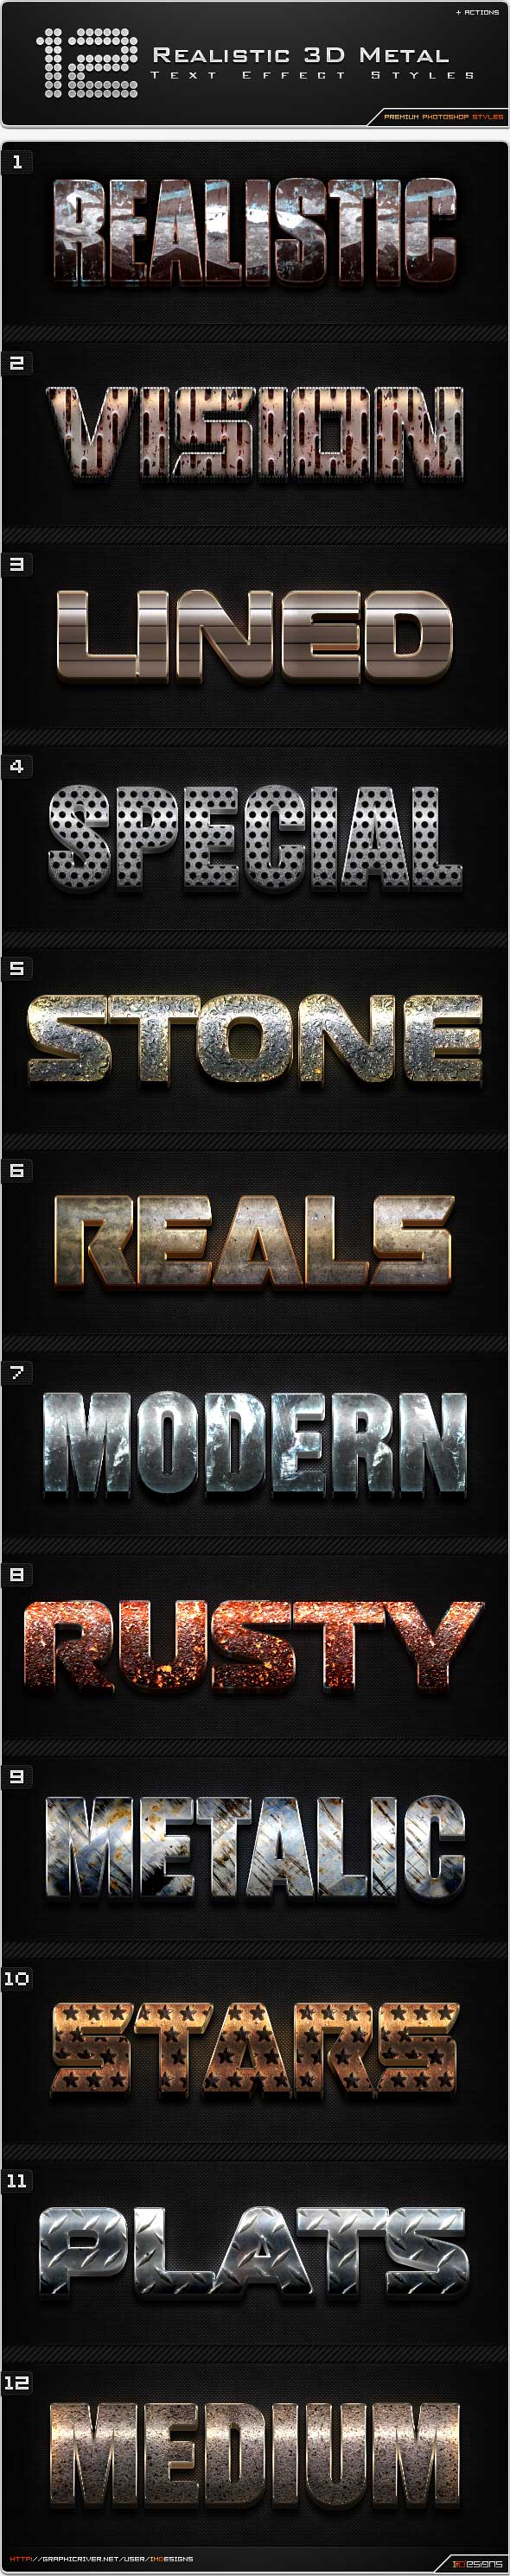 12-Realistic-3D-Metal-Styles.jpg